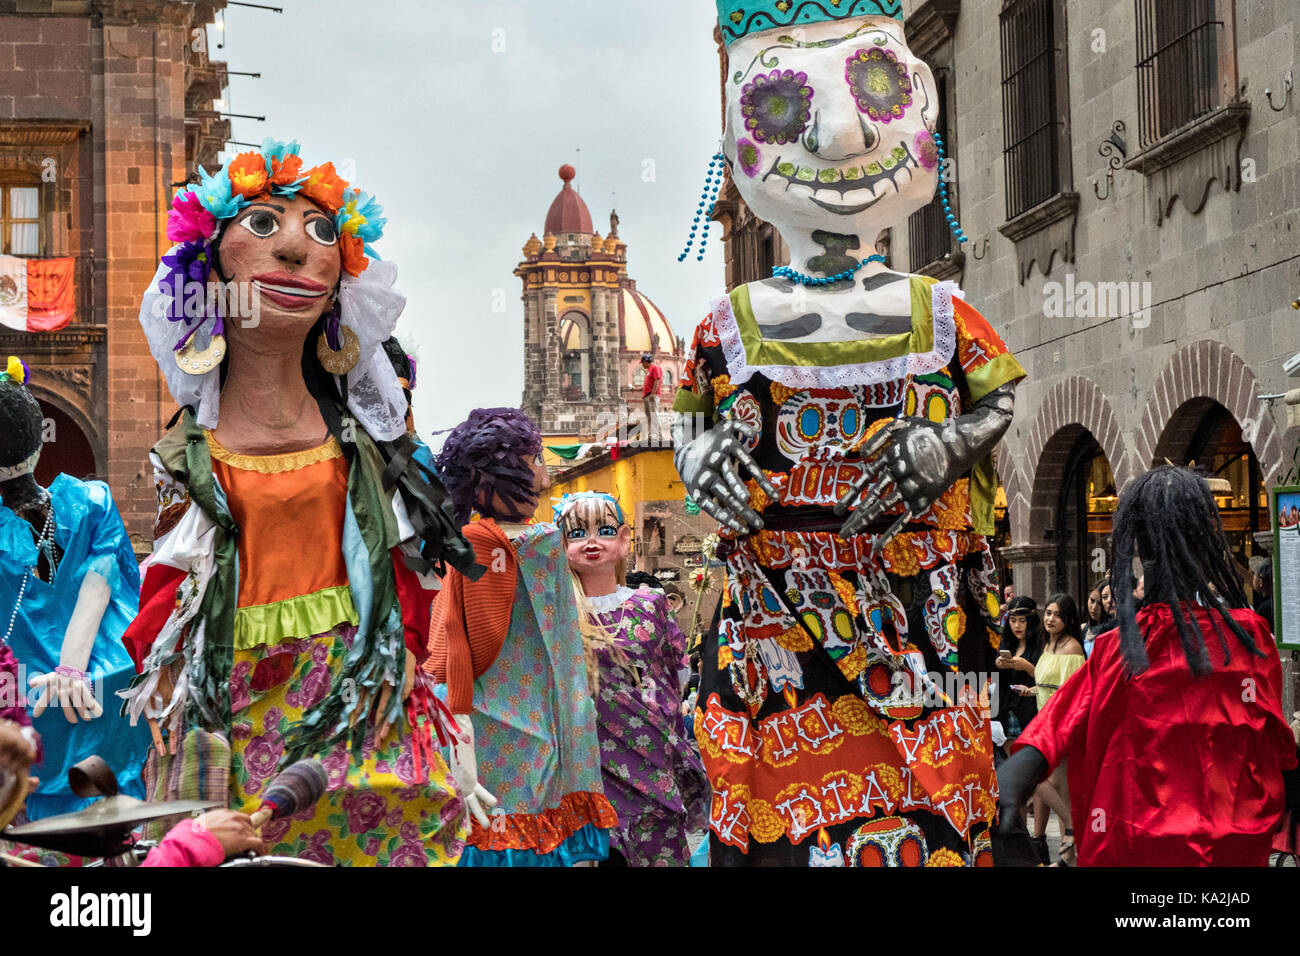 Eine Parade der Riesen papier - mache Marionetten mojigangas Tanz in einer Prozession durch die Stadt zu Beginn des einwöchigen Fiesta des Schutzheiligen St. Michael September 22, 2017 in San Miguel de Allende, Mexiko. Stockfoto